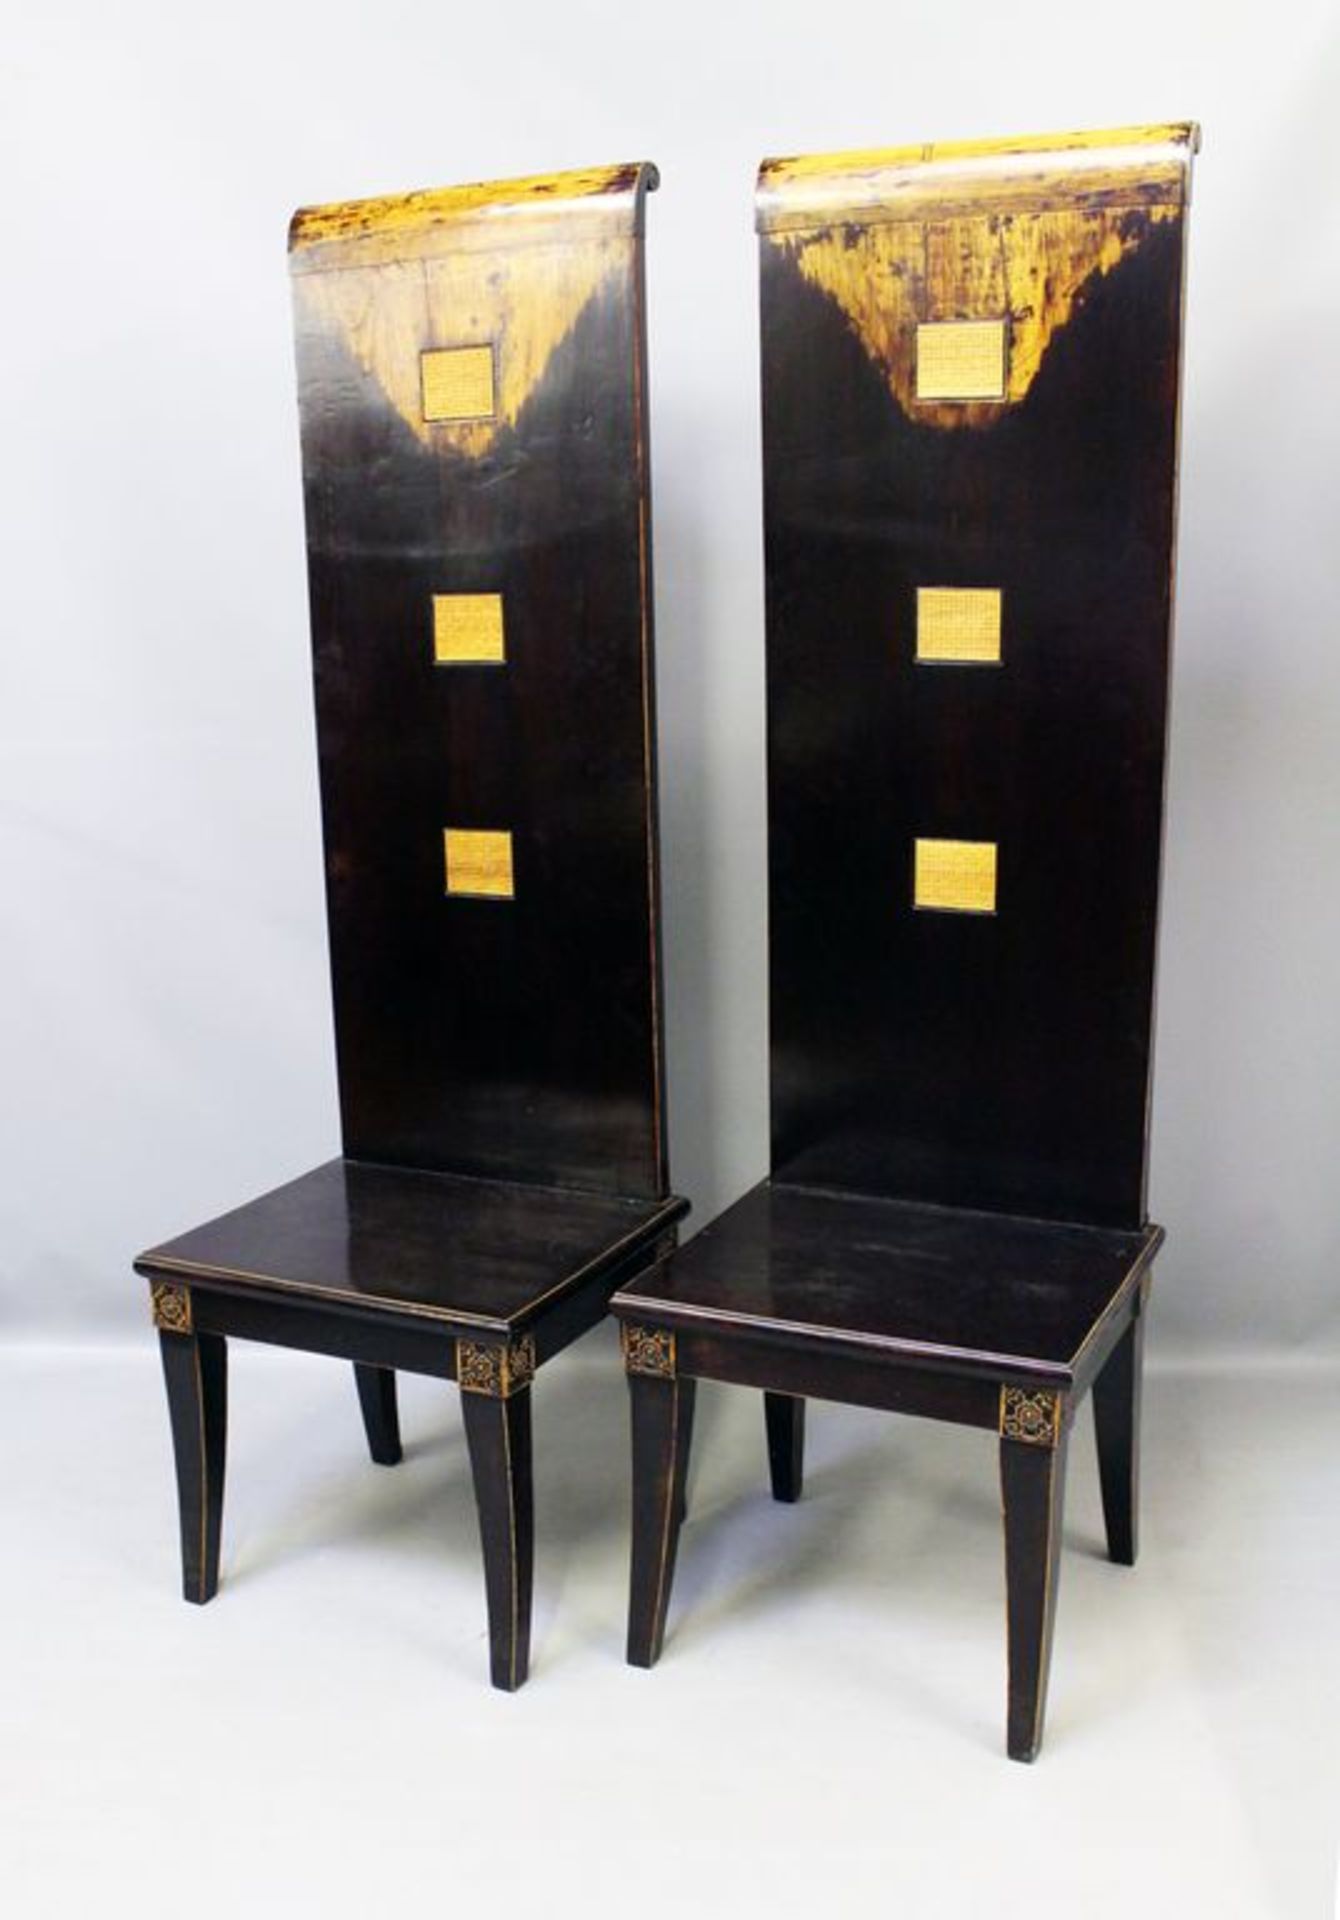 Paar Hochstühle, China. Holz, dunkelbraun lackiert. Hohe Rückenlehne mit drei kalligraphischen